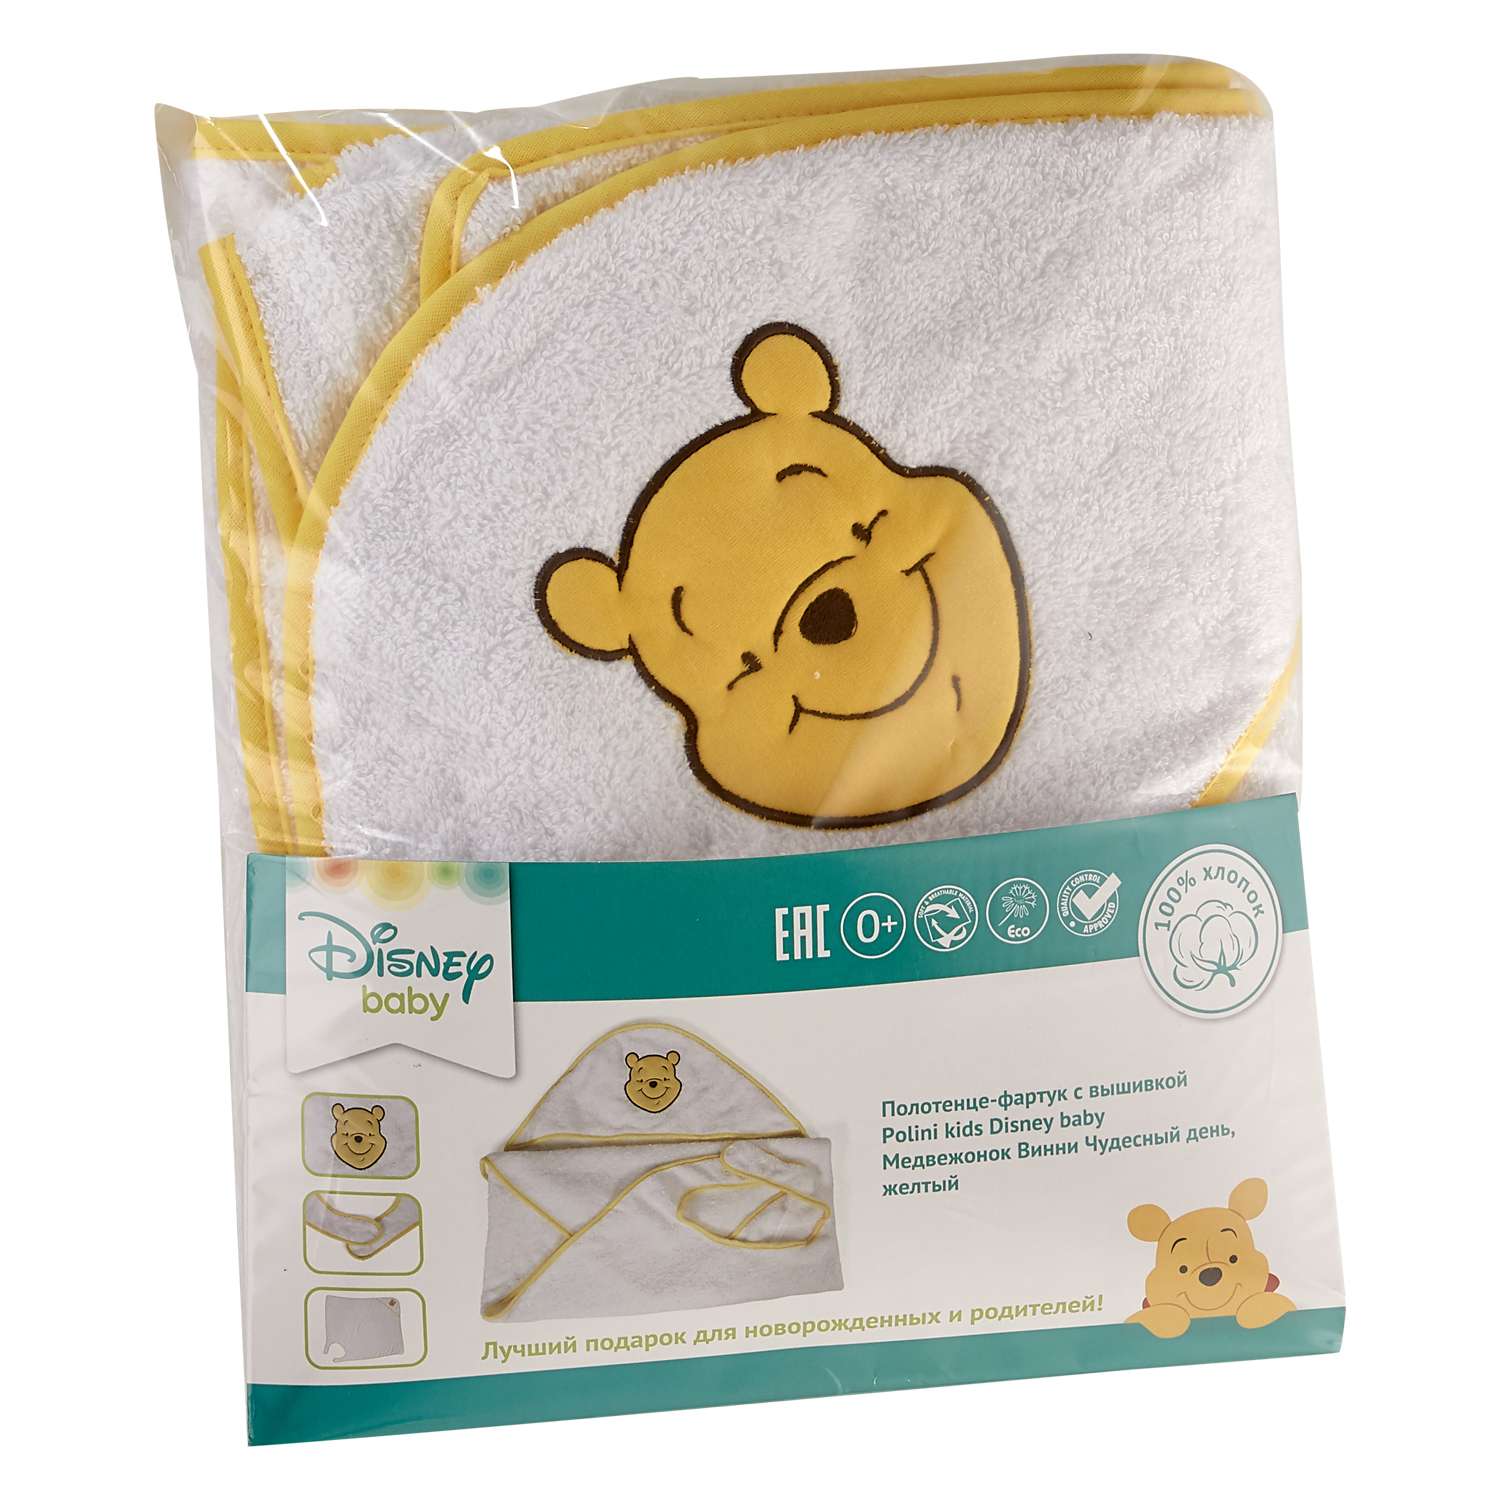 Полотенце-фартук Polini kids Disney baby Медвежонок Винни Чудесный день c вышивкой Желтый - фото 2